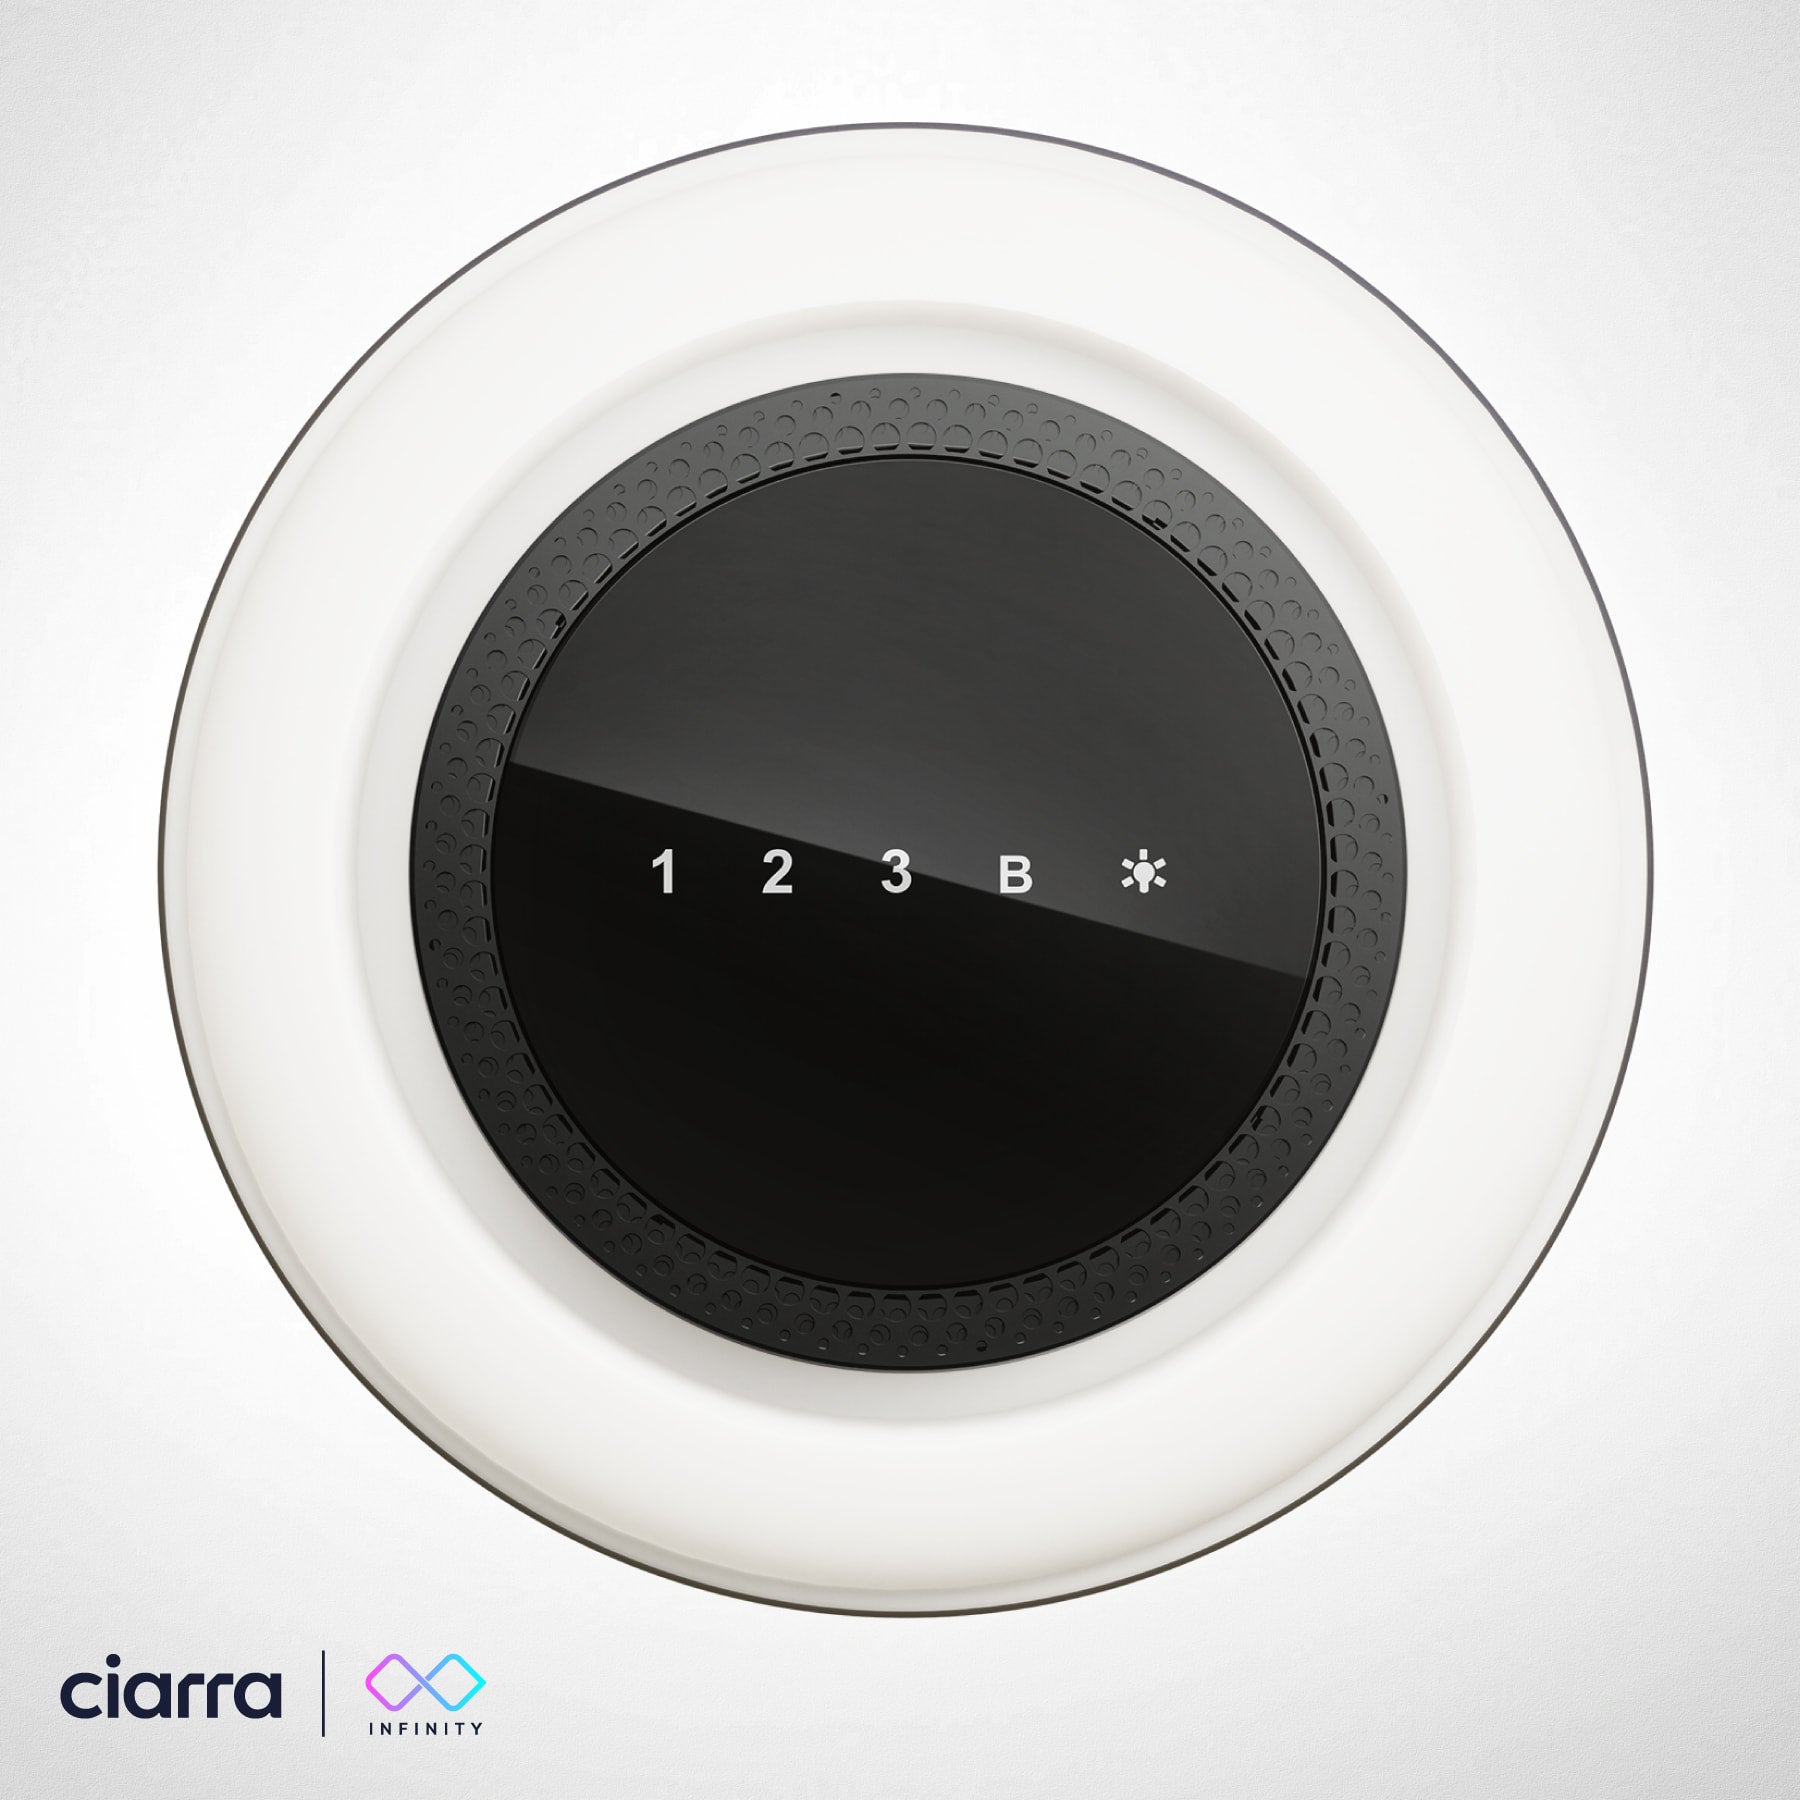 CIARRA CBCB4850 Campana Extractora en Isla sin Salida de Humos Clase A+++  48cm 700m³/ h WiFi y Control Táctil Filtro de Carbón Incluido 4 Velocidades  2 Luces LED Negro : .es: Grandes electrodomésticos